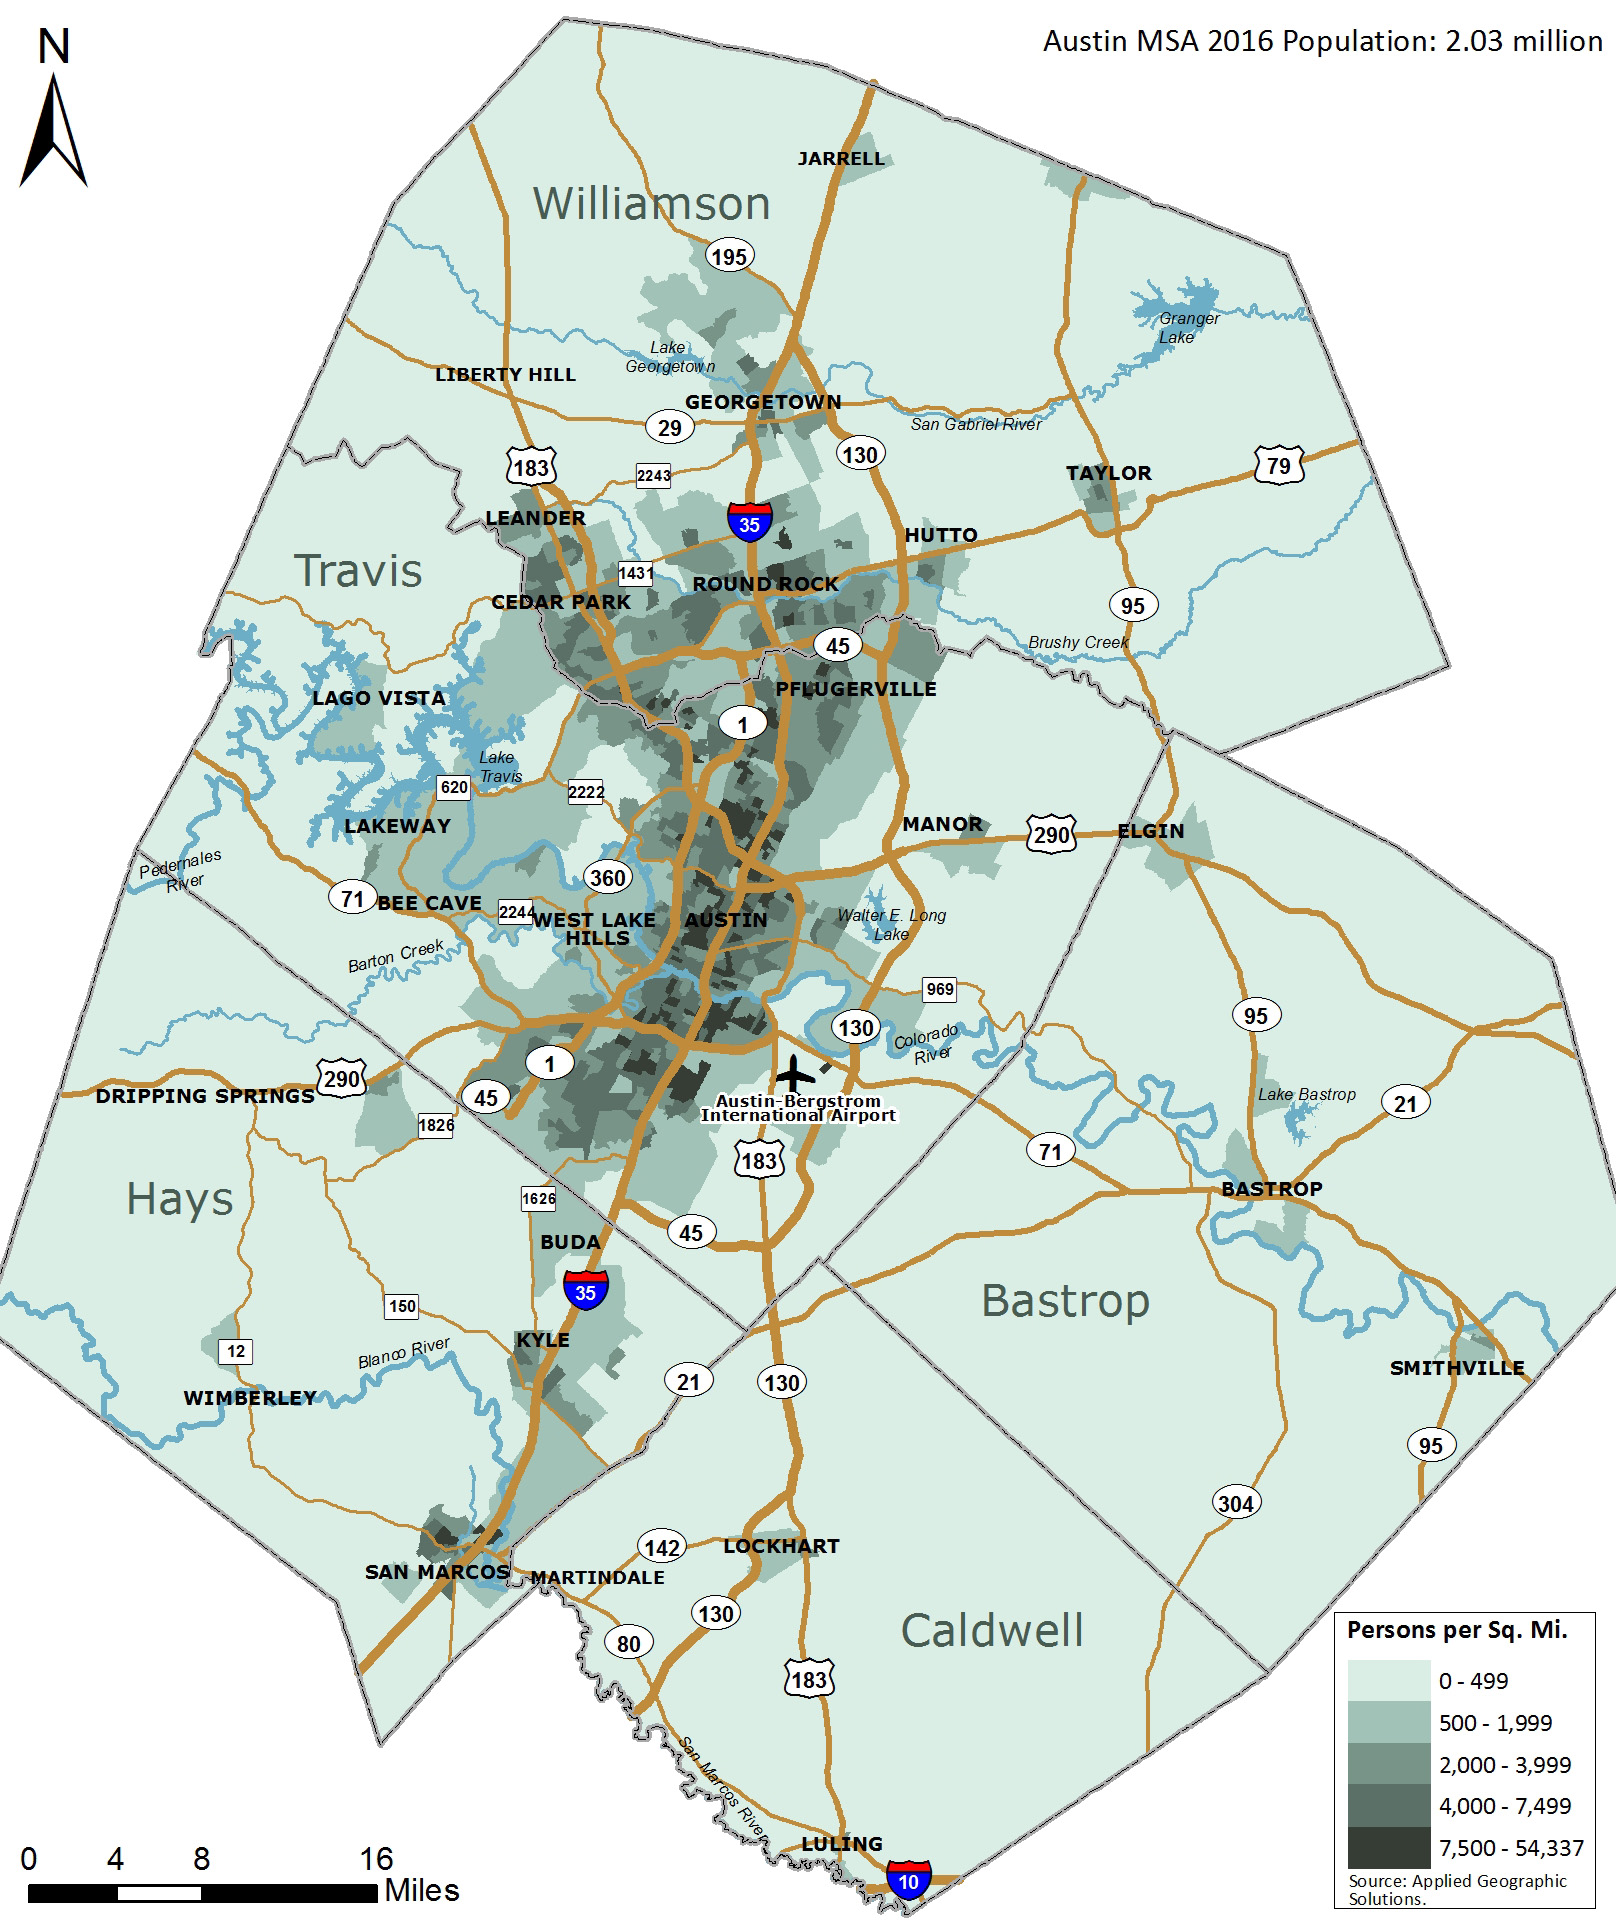 5 counties around Austin Tx: Bastrop, Caldwell, Hays, Travis, & Williamson